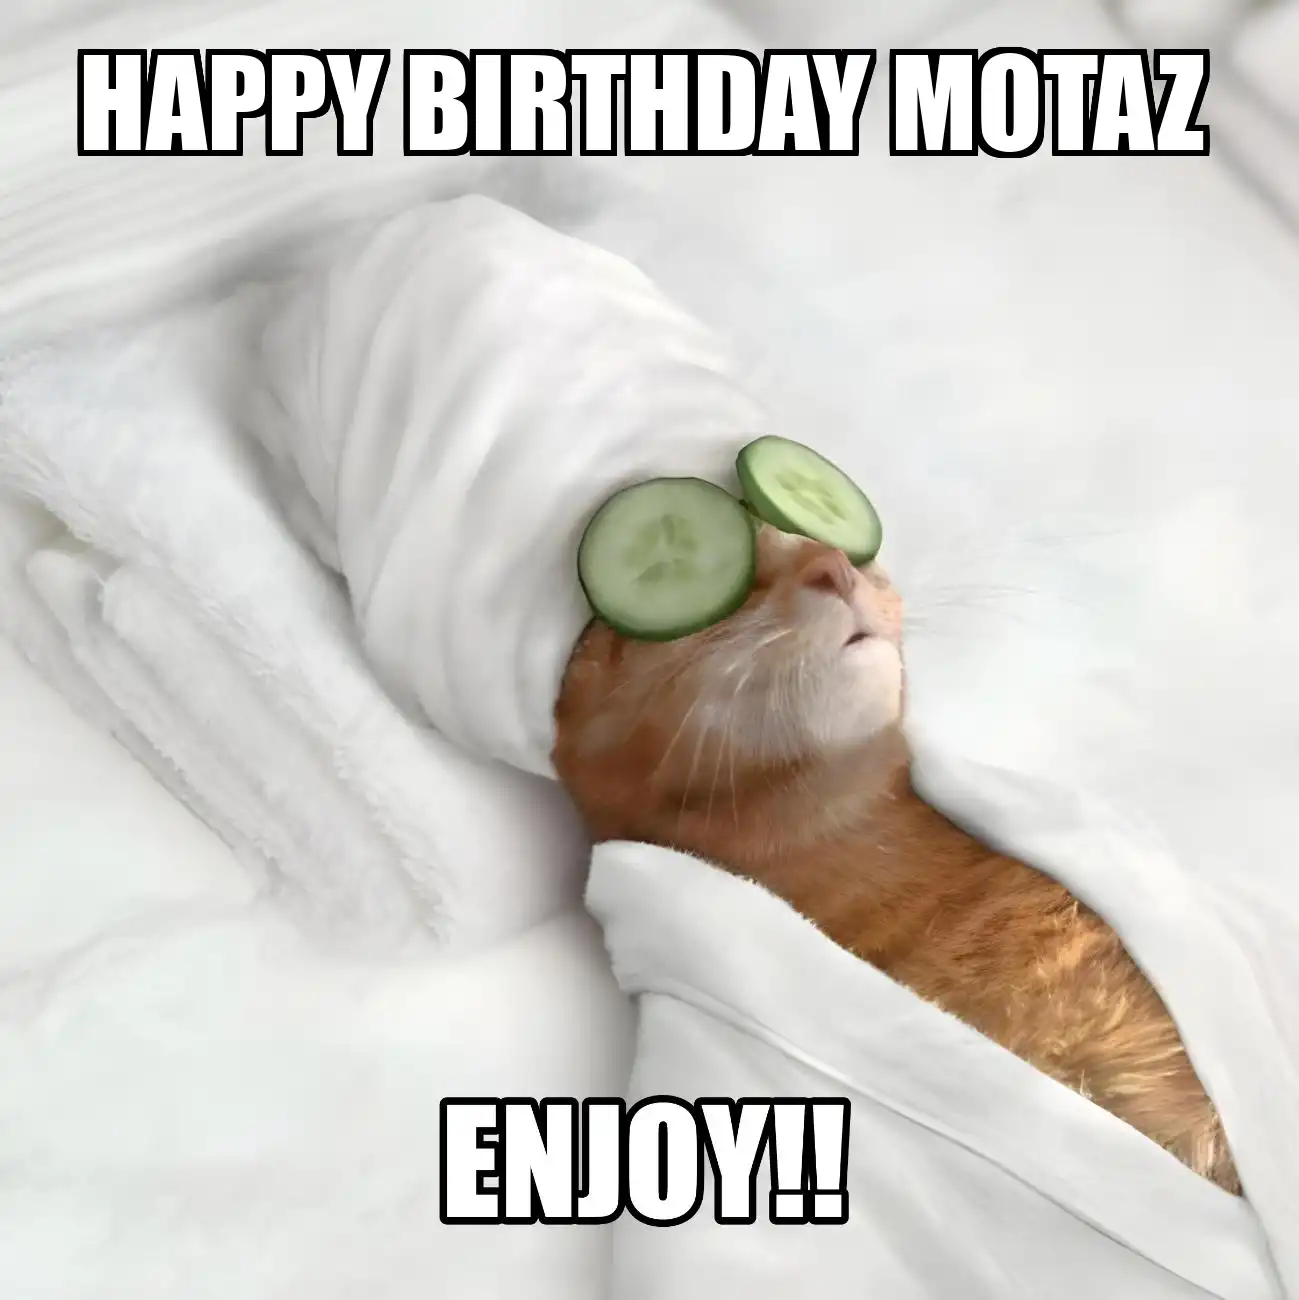 Happy Birthday Motaz Enjoy Cat Meme